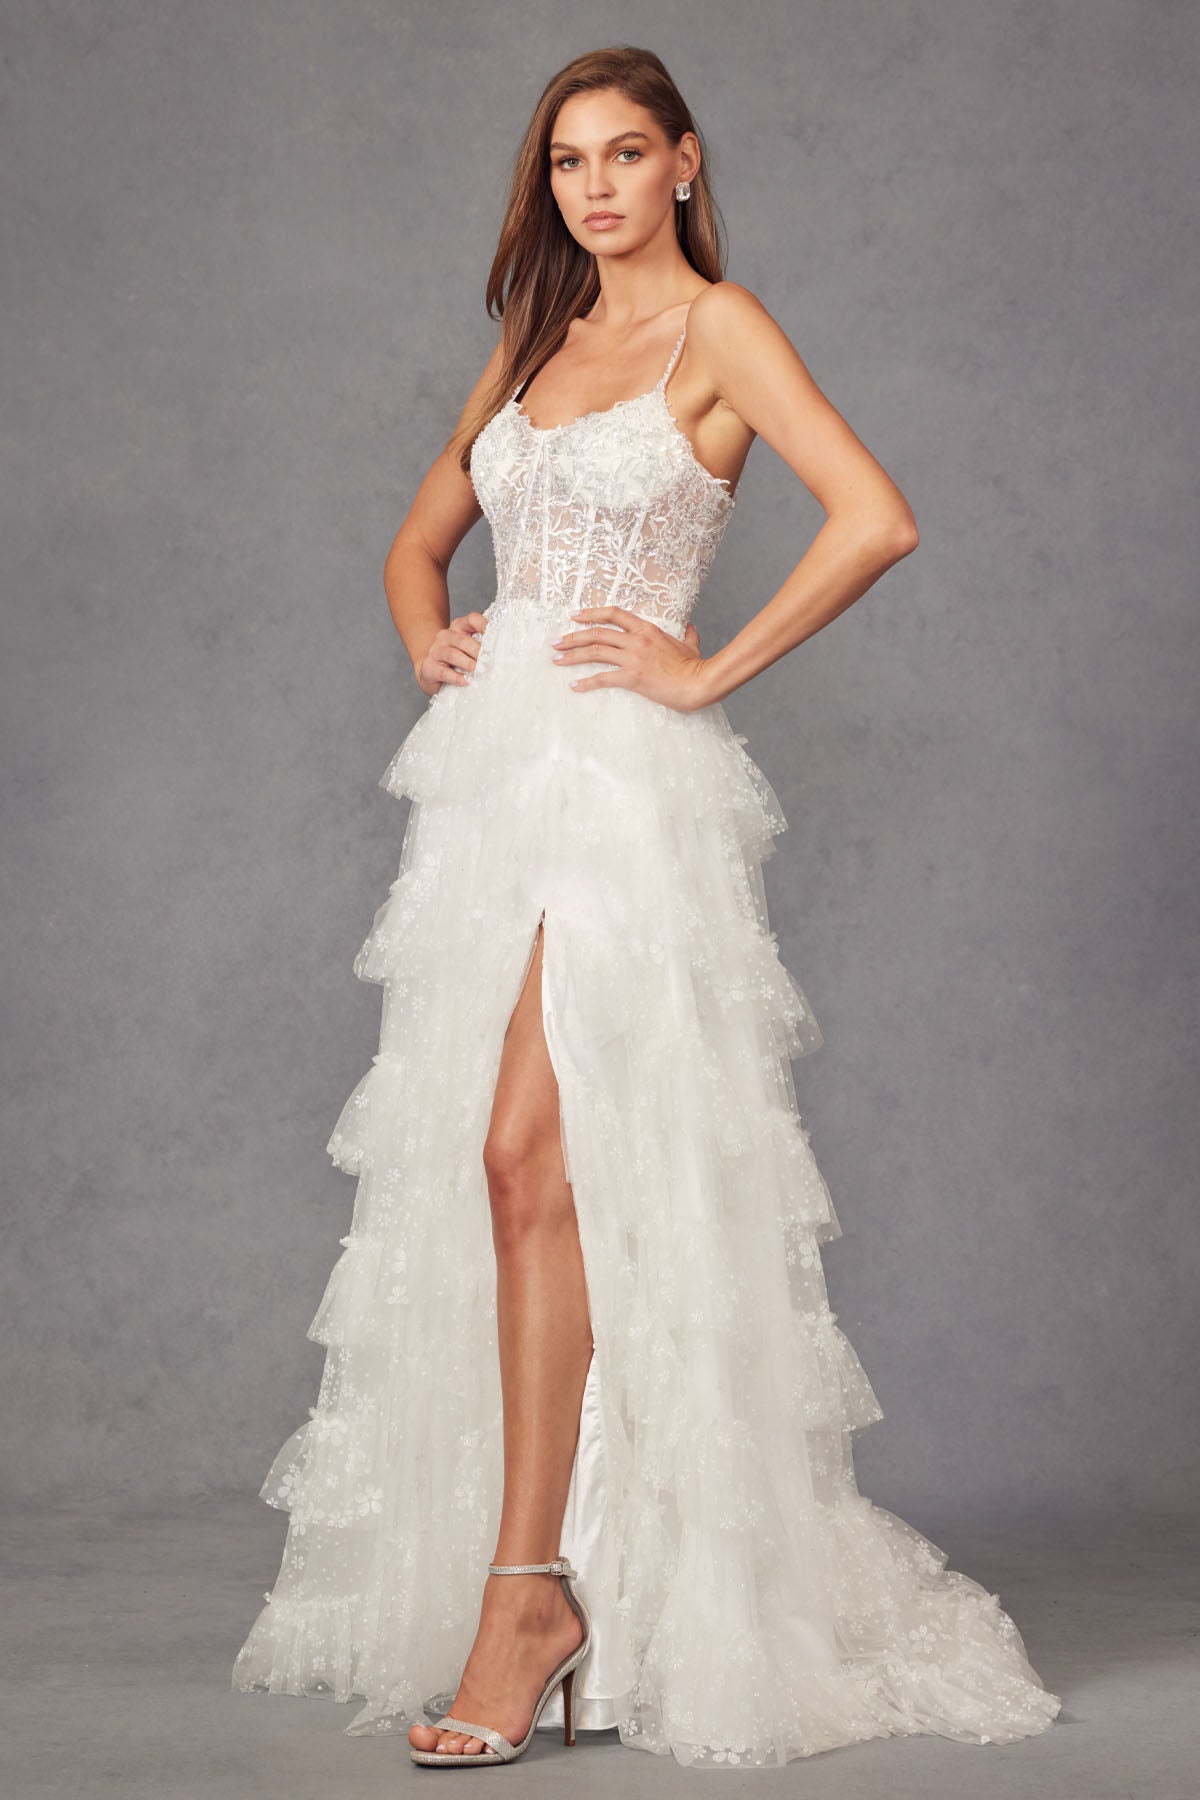 Wedding Dresses Sparkle Glitter Ruffle Skirt Bow Belt Bridal Gown Off White